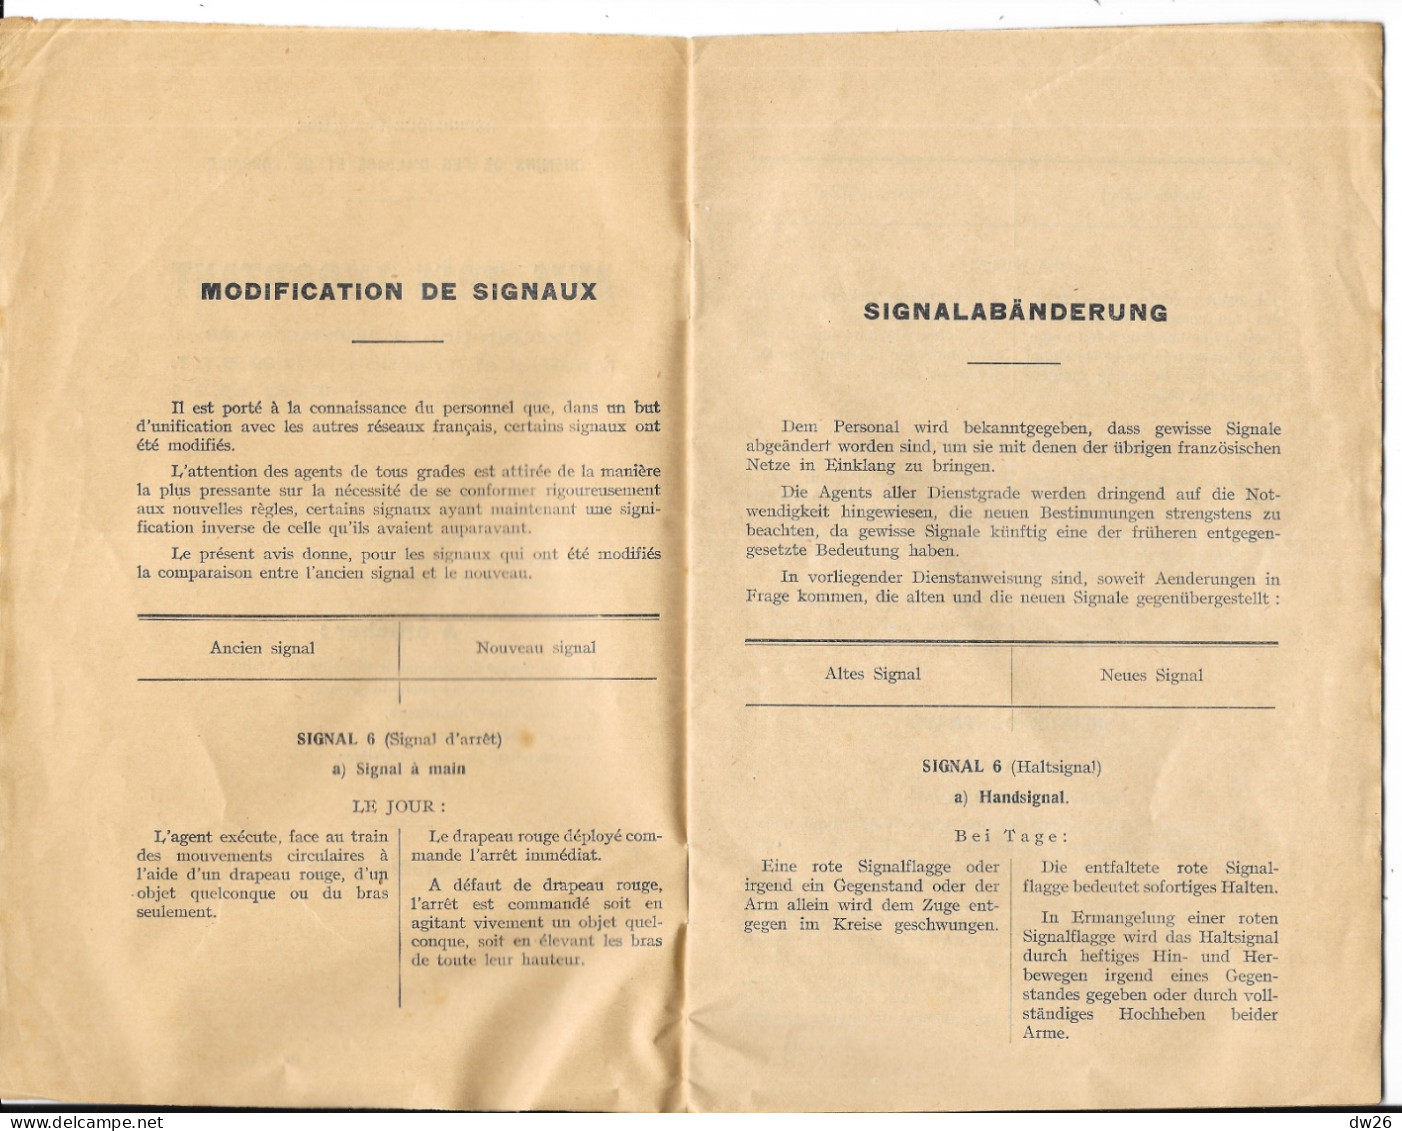 Chemins De Fer D'Alsace Et De Lorraine - Livret: Avis Très Important à Distribuer Aux Agents Cheminaux 1932 - Ferrovie